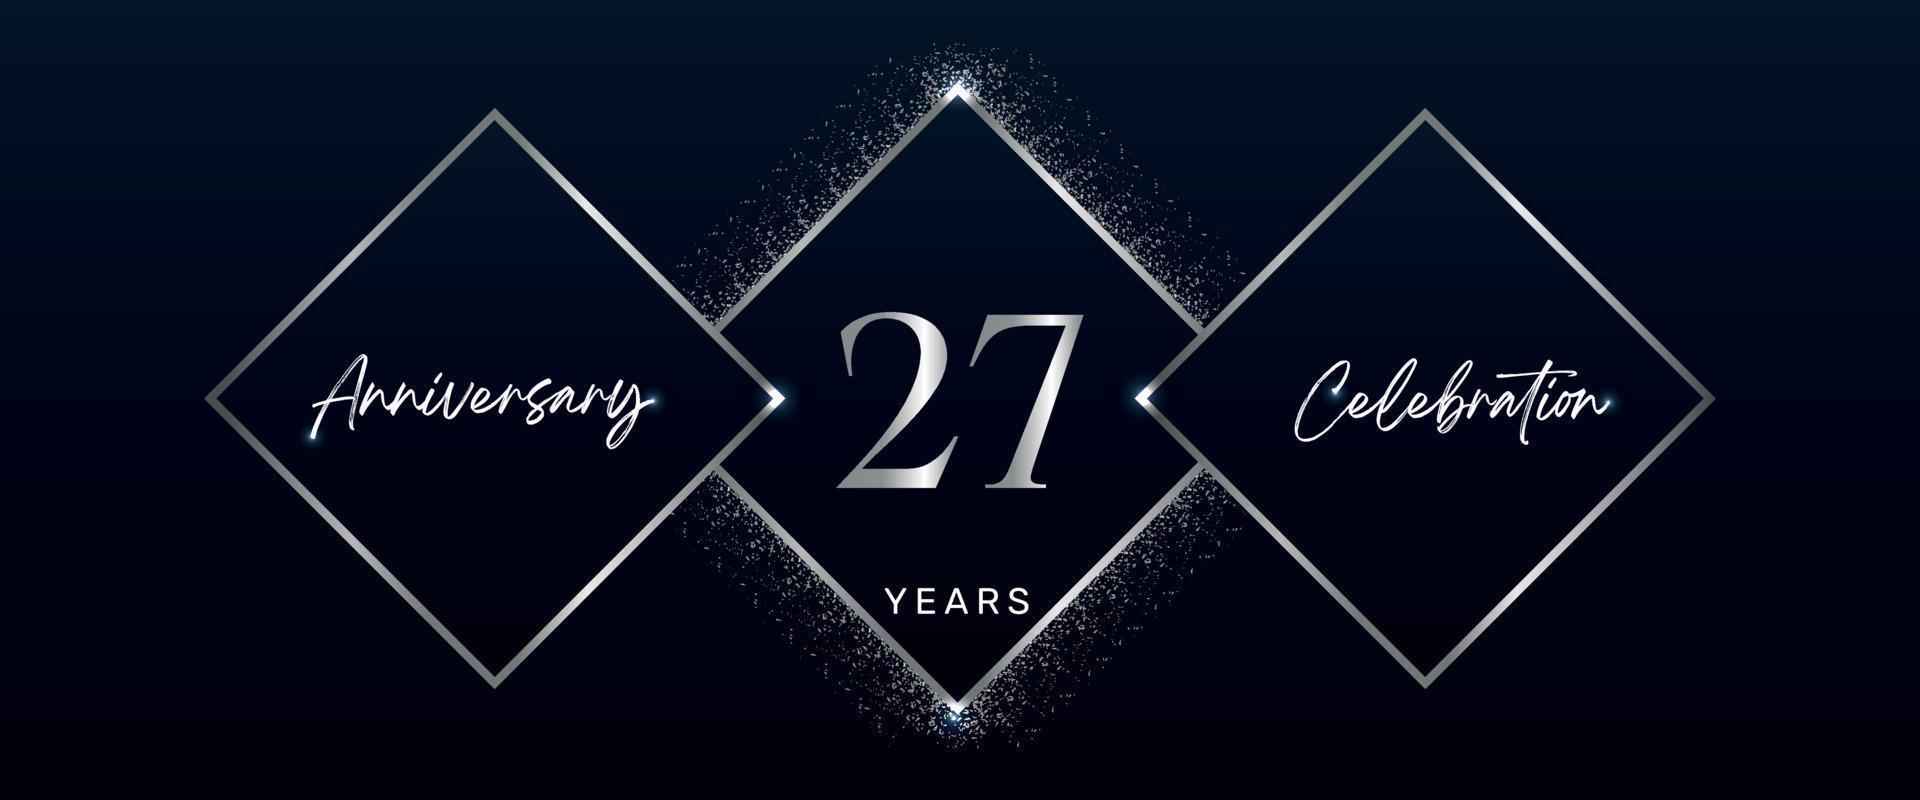 Logotipo de celebración de aniversario de 27 años. diseño vectorial para eventos de celebración de aniversario, fiesta de cumpleaños, tarjeta de felicitación, boda, tarjeta de invitación. vector de diseño de plantilla de aniversario de 27 años